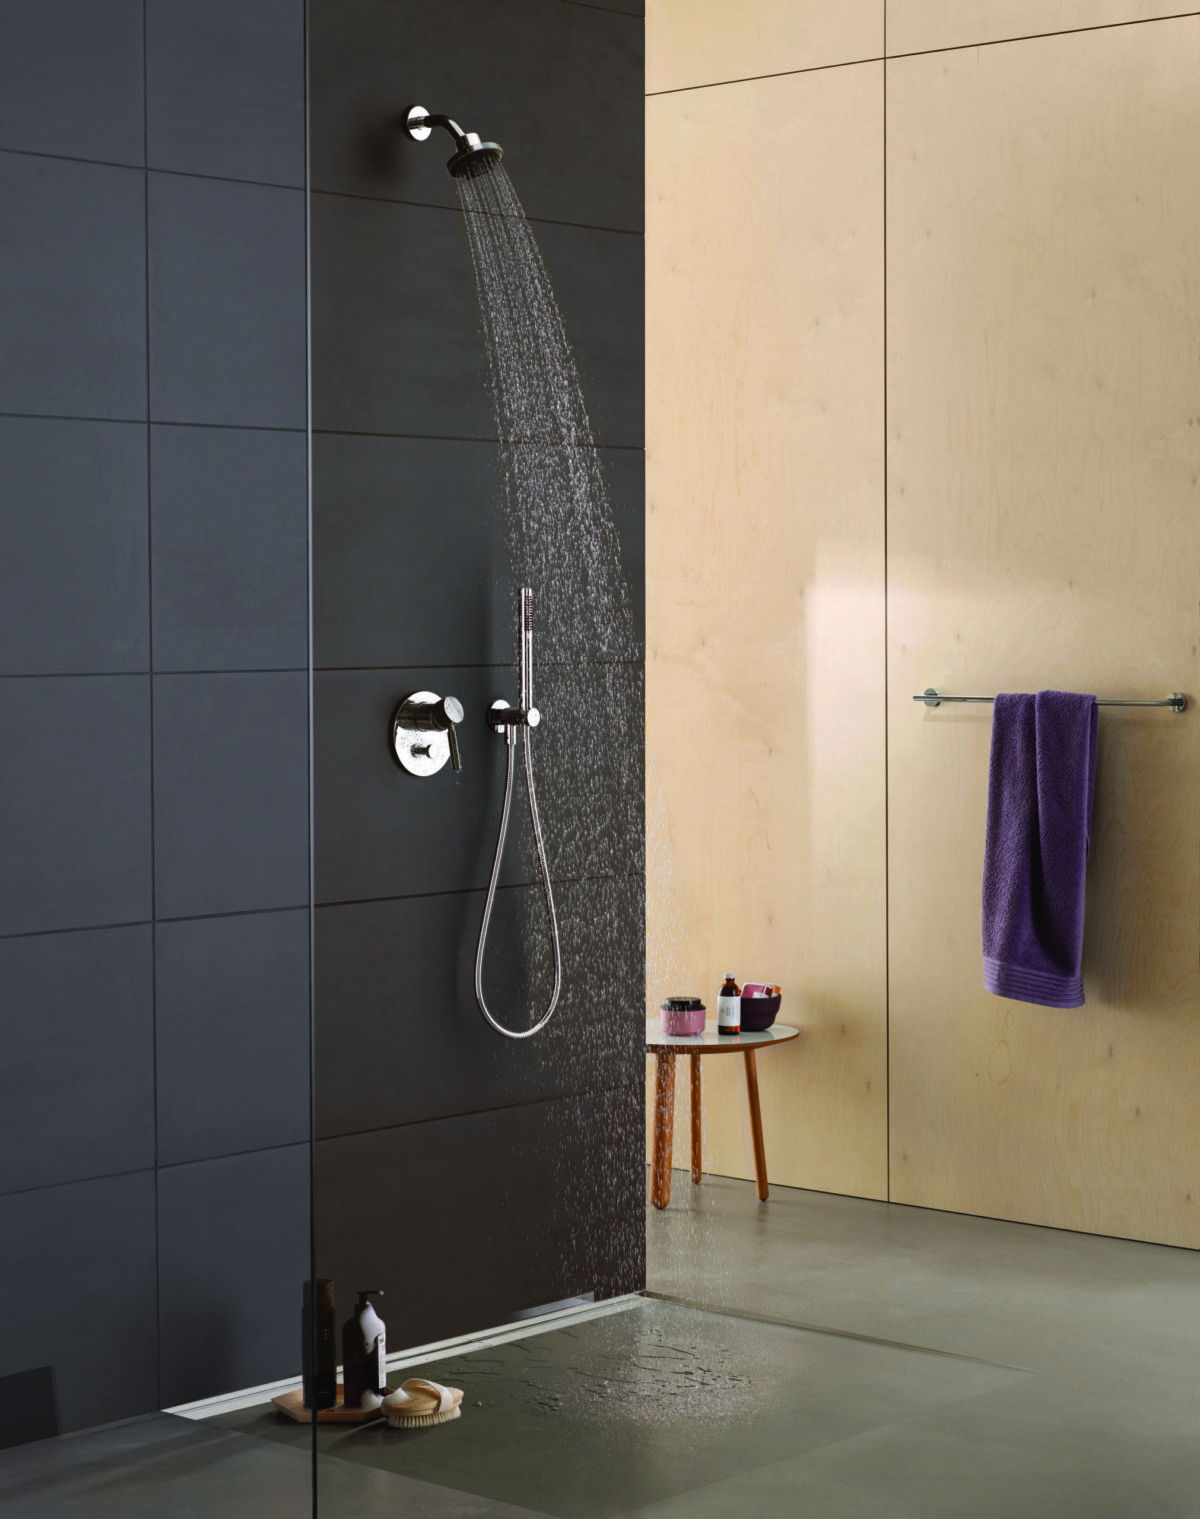 Des robinets et des douches pour économiser l'eau: comment ça marche?